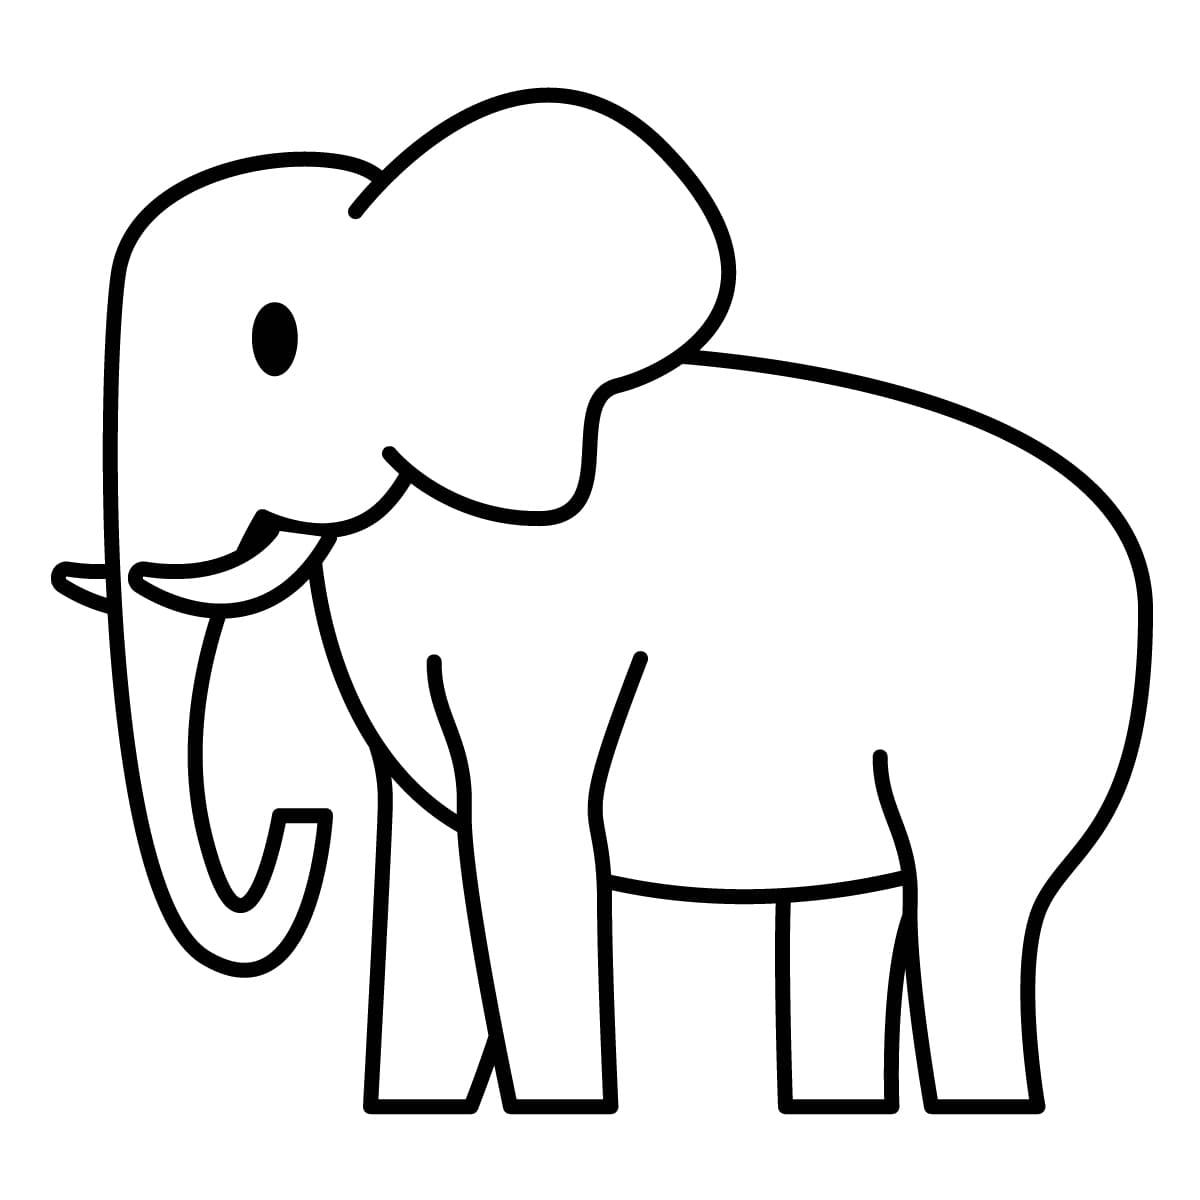 Dibujo de elefante para colorear e imprimir - Dibujos y colores